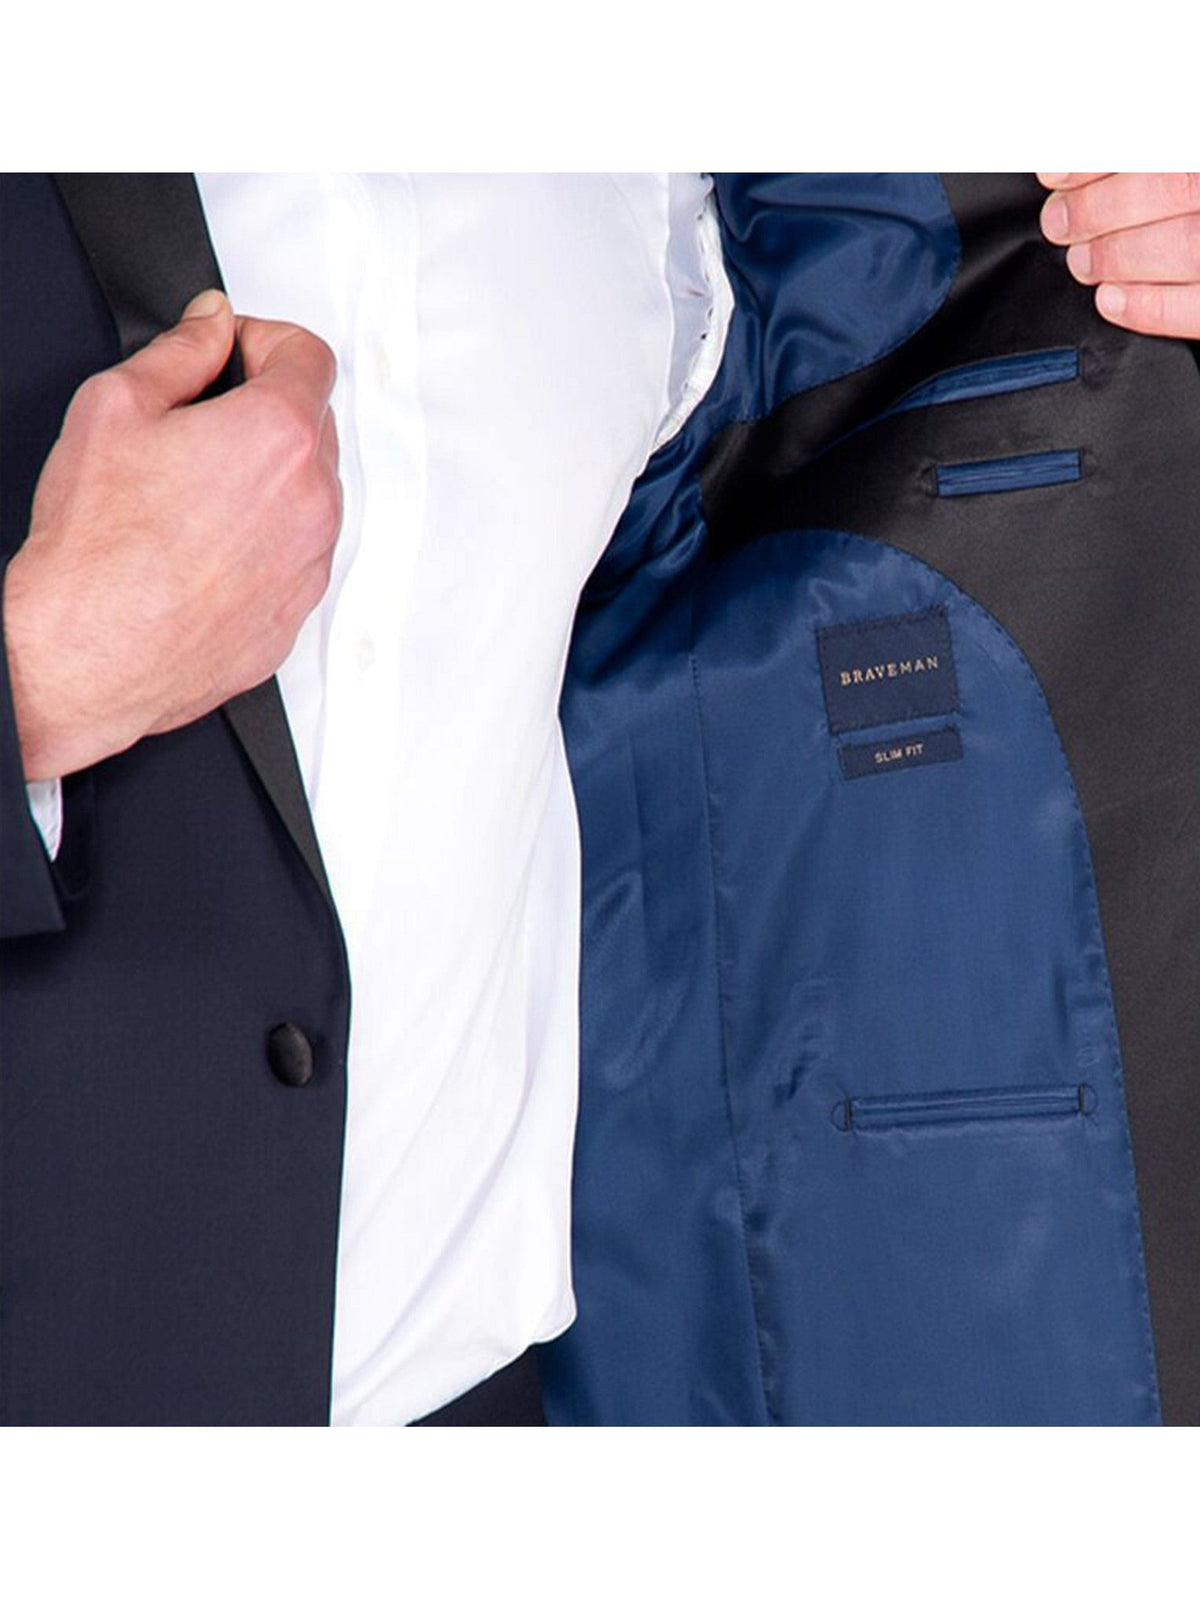 lining of navy blue tuxedo jacket